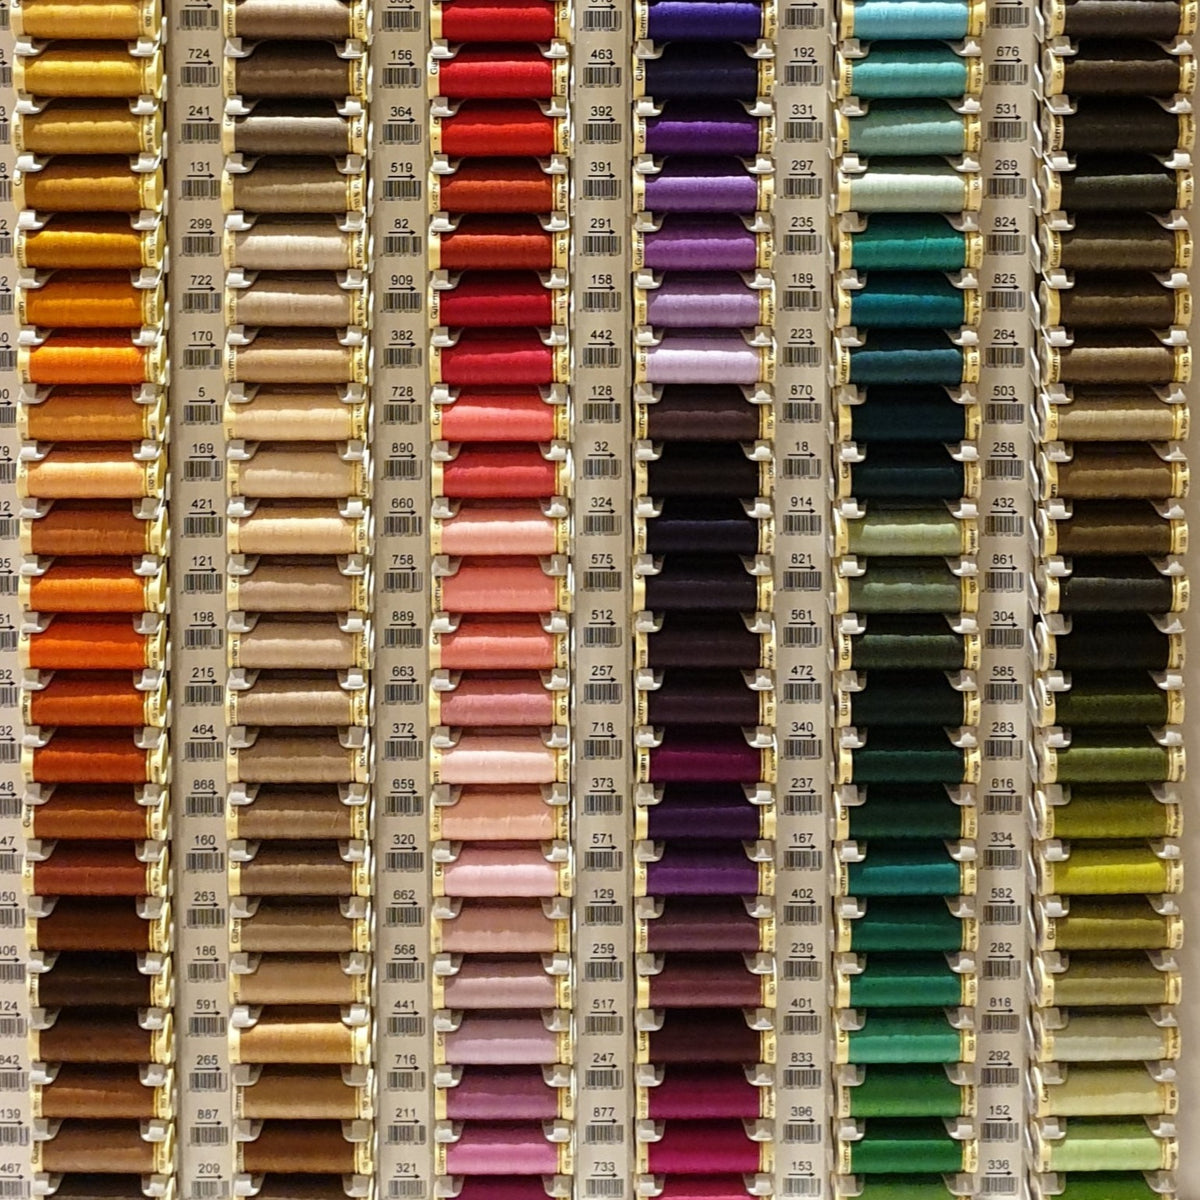 Sew All Gutermann Thread - 100m - Colour 656 – Craftyangel